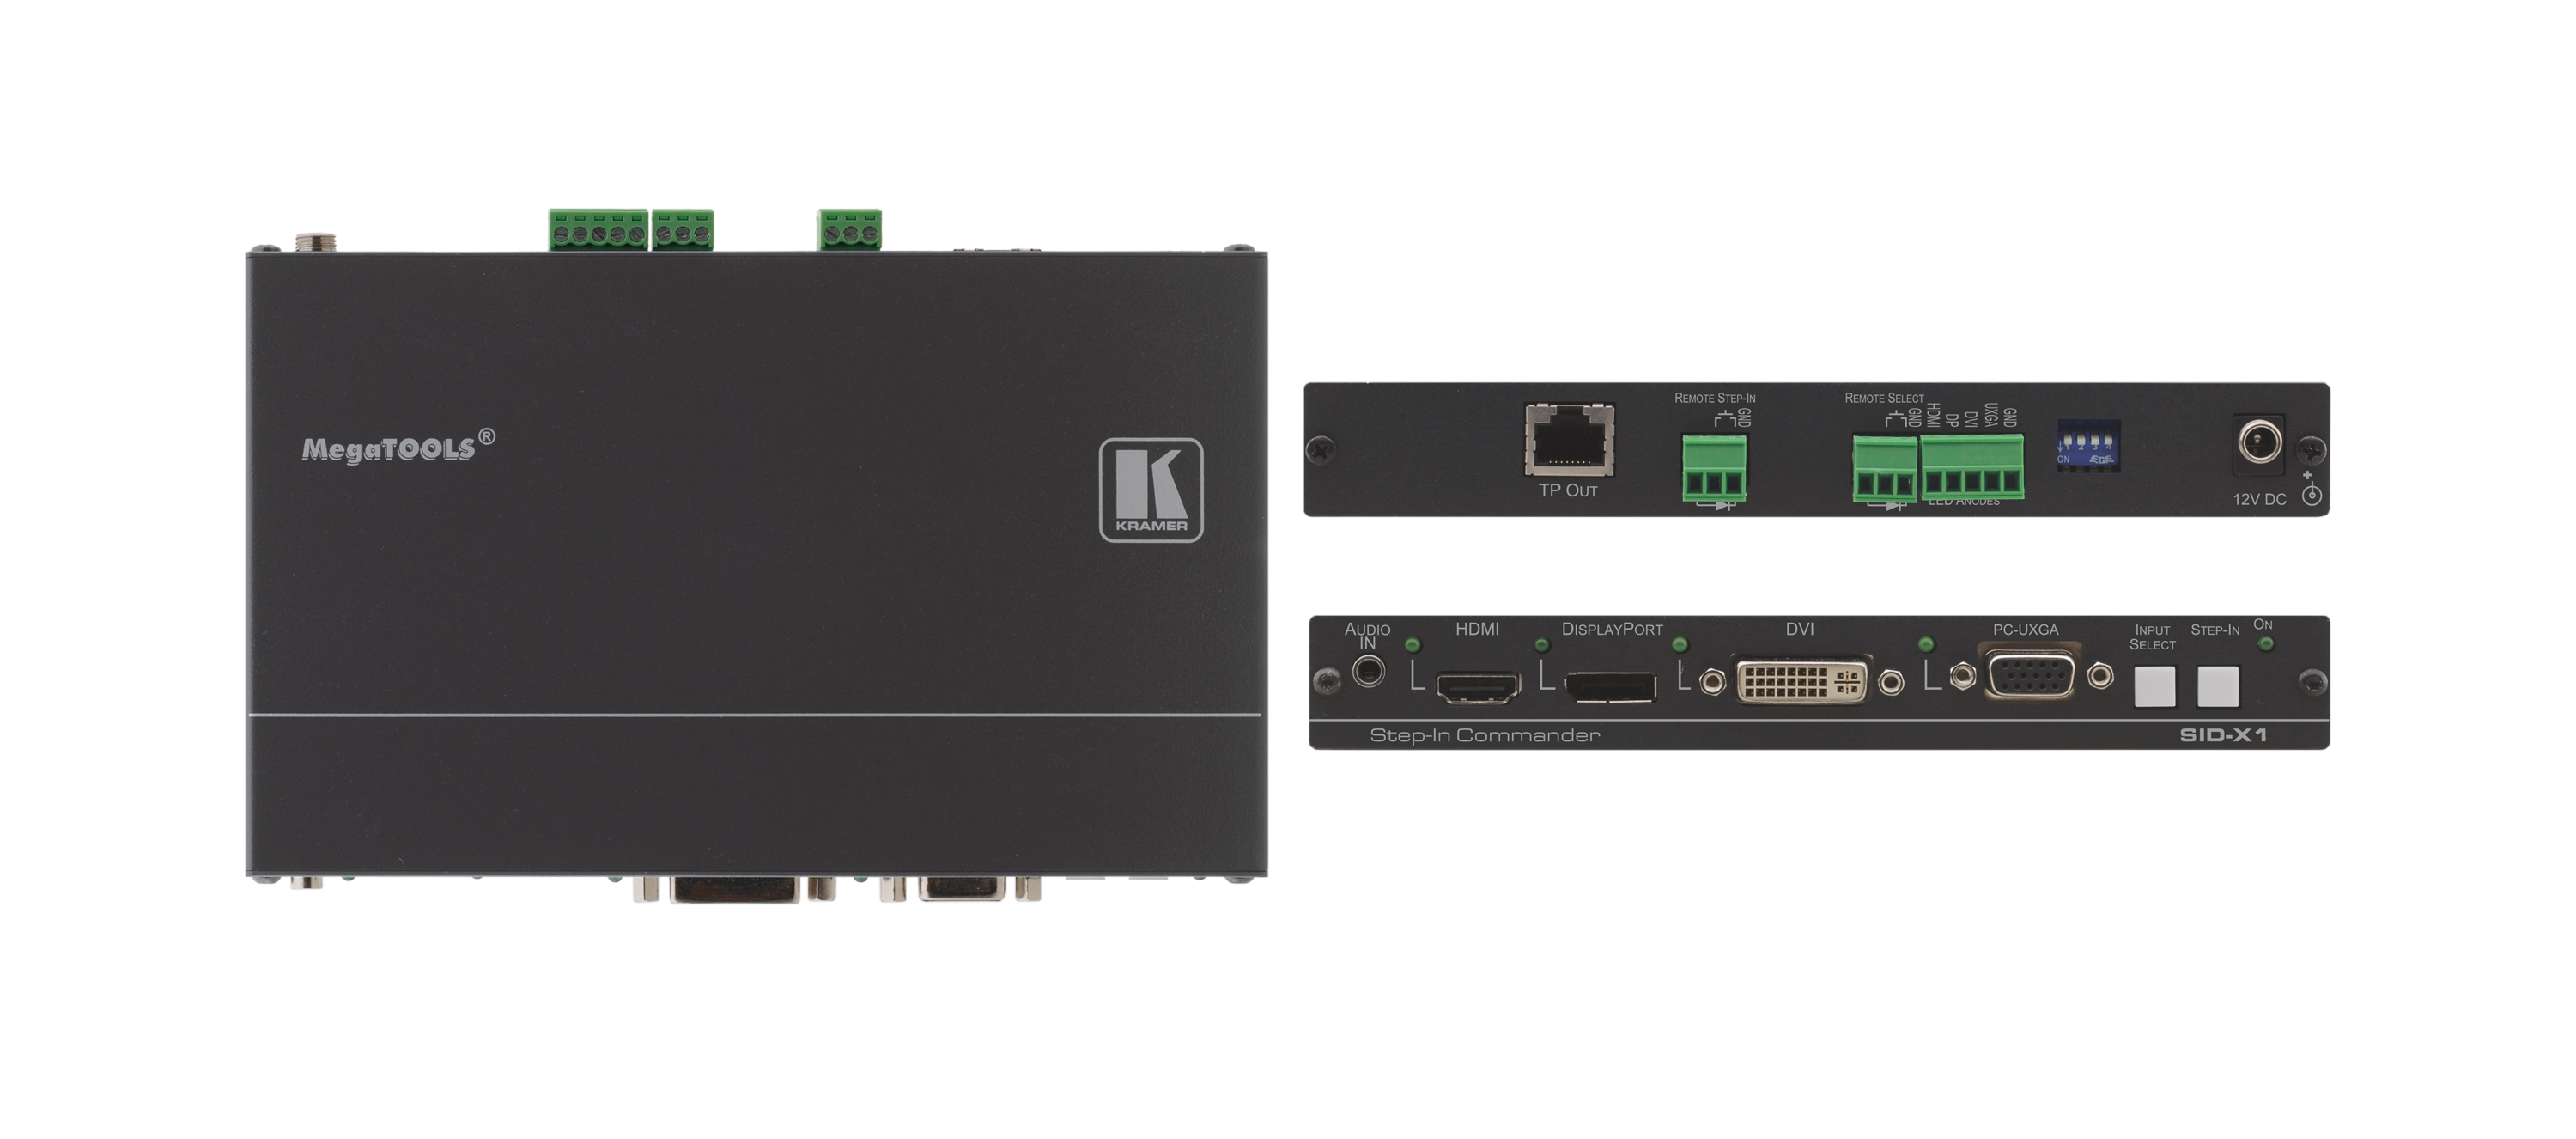 Передатчик Kramer SID-X1 сигнала DisplayPort/DVI-D/DisplayPort/VGA по витой паре DGKat и панель управления коммутатором Step-In